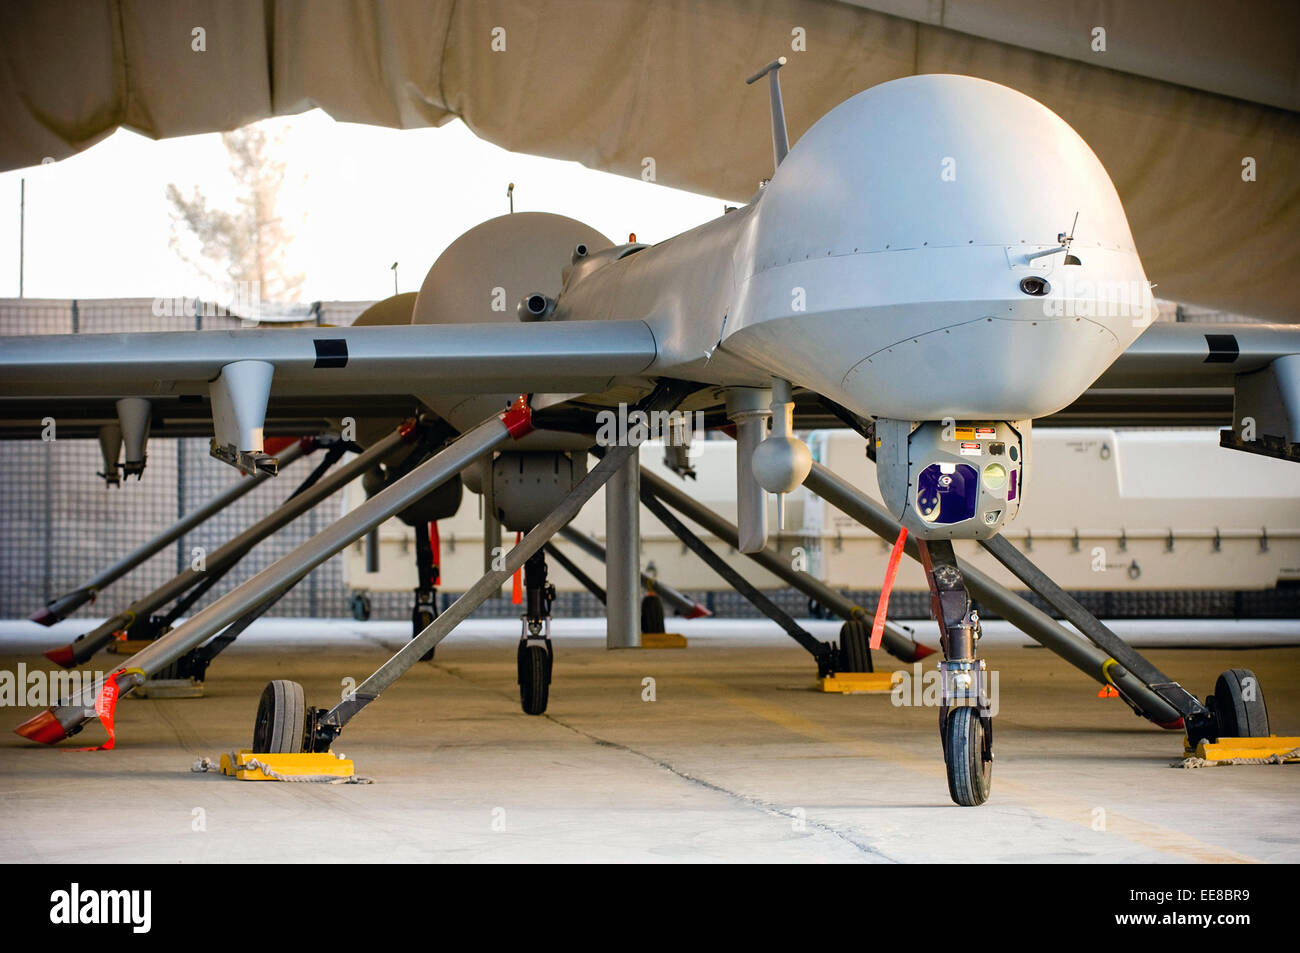 Trois MQ-1 prédateurs s'asseoir prêt à être lancé dans un hangar à l'aérodrome de Kandahar, Afghanistan. Voir la description pour plus d'informations. Banque D'Images